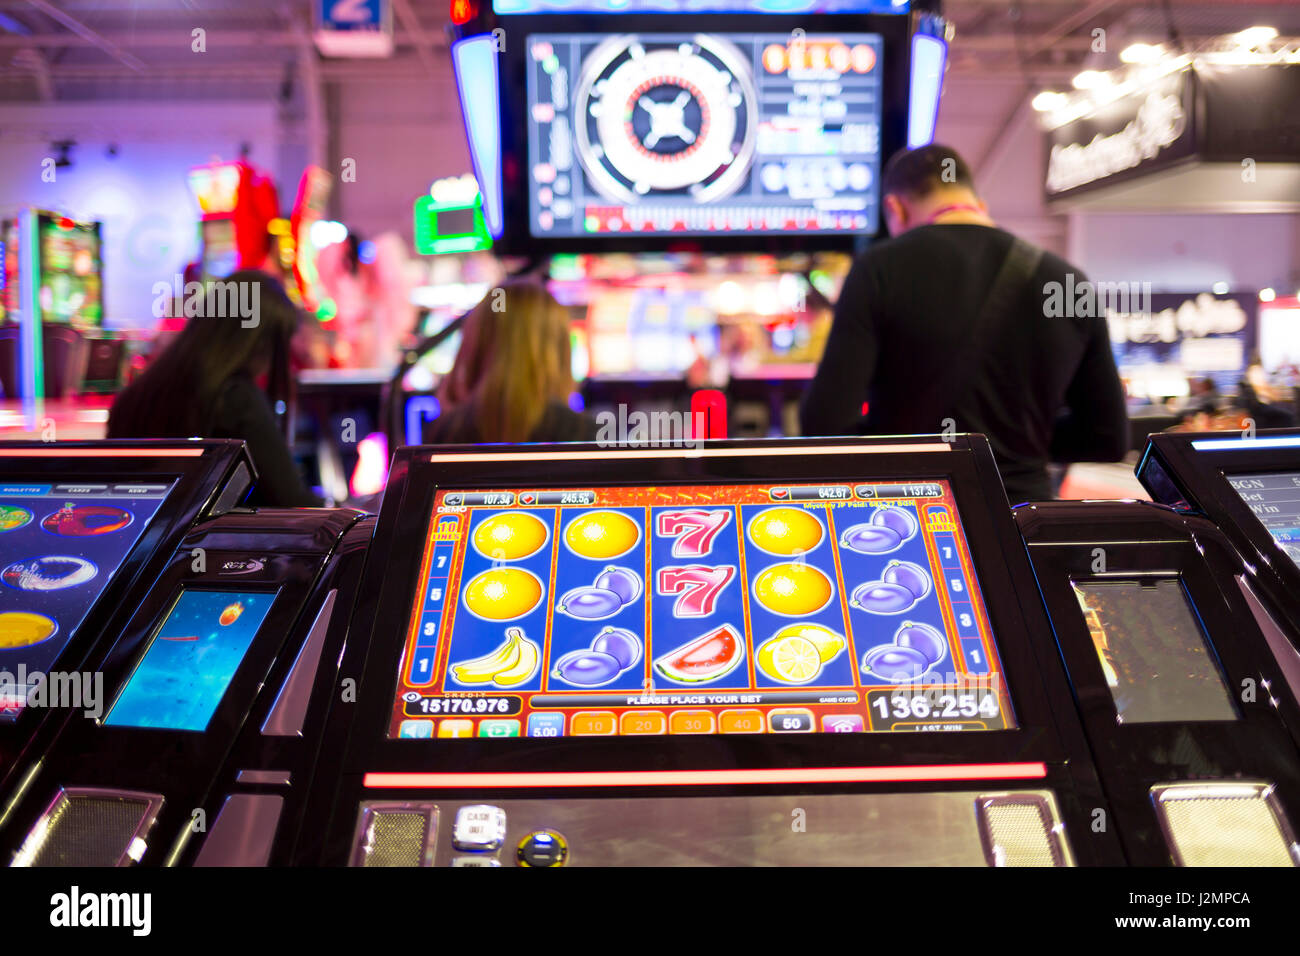 Una slot machine monitor è visto in un casinò con sagome di persone in background. Frutti presso il monitor della slot machine. Foto Stock